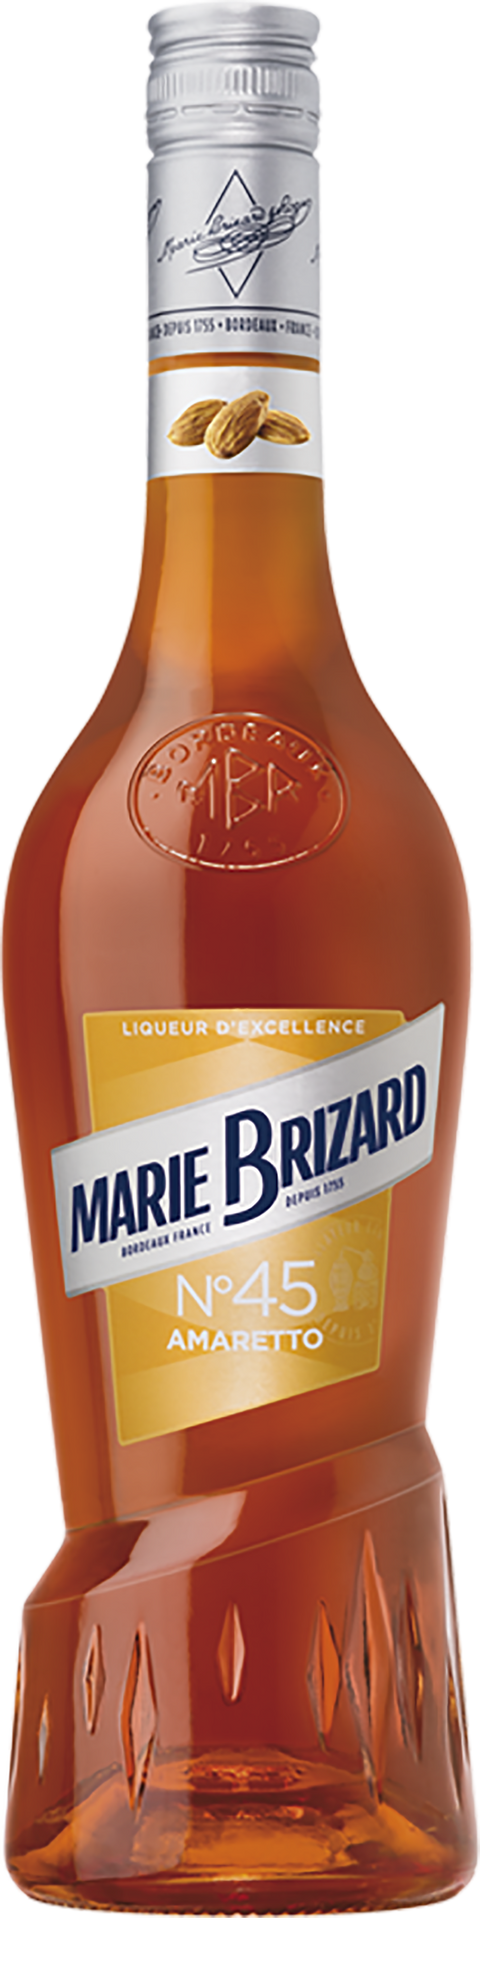 Liqueur de fleur de sureau Marie Brizard